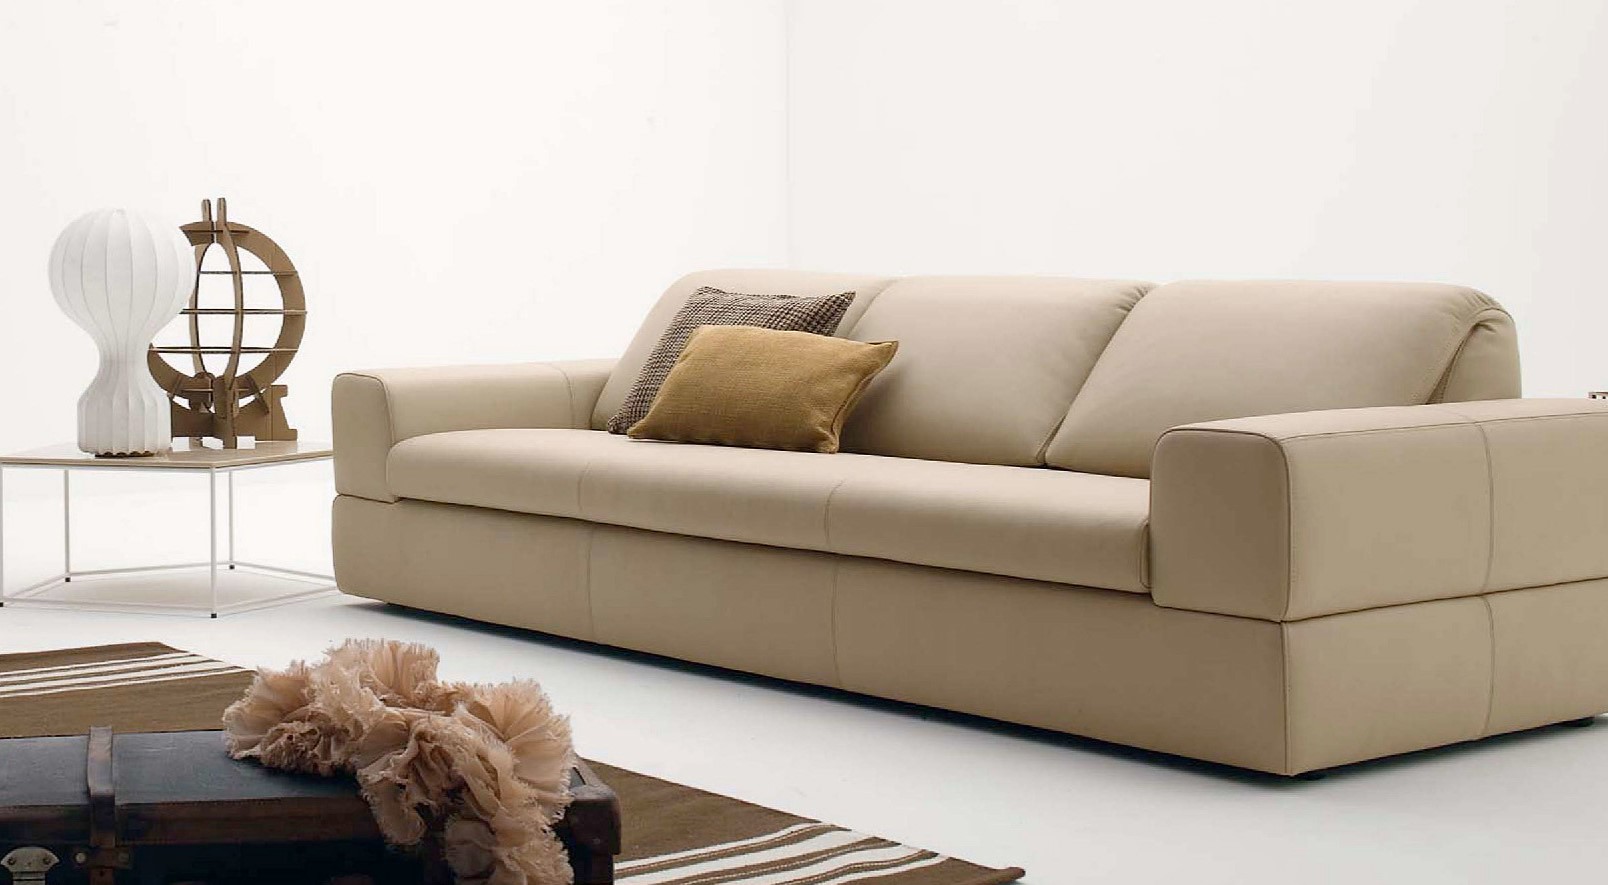 Днем диван можно использовать в сложенном виде для отдыха и просмотра фильмов